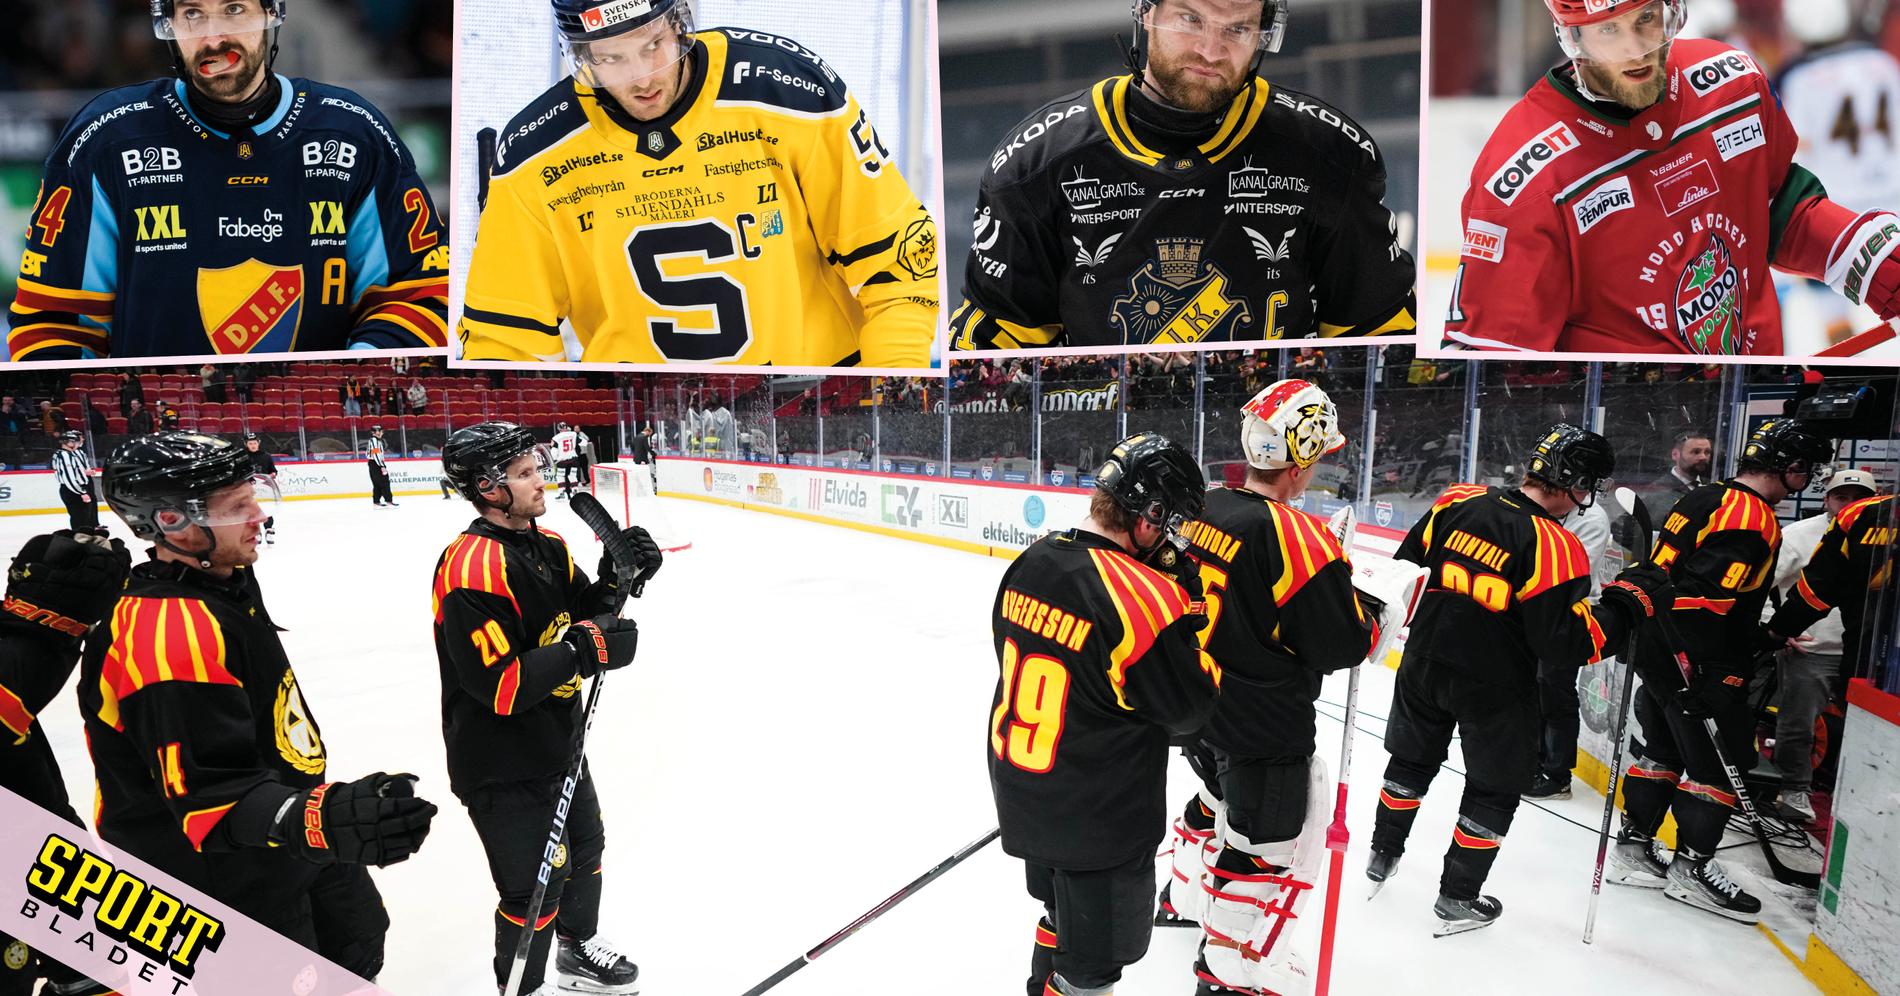 Hockeyallsvenskan blir allt starkare: ”Fler SM-guld än SHL”